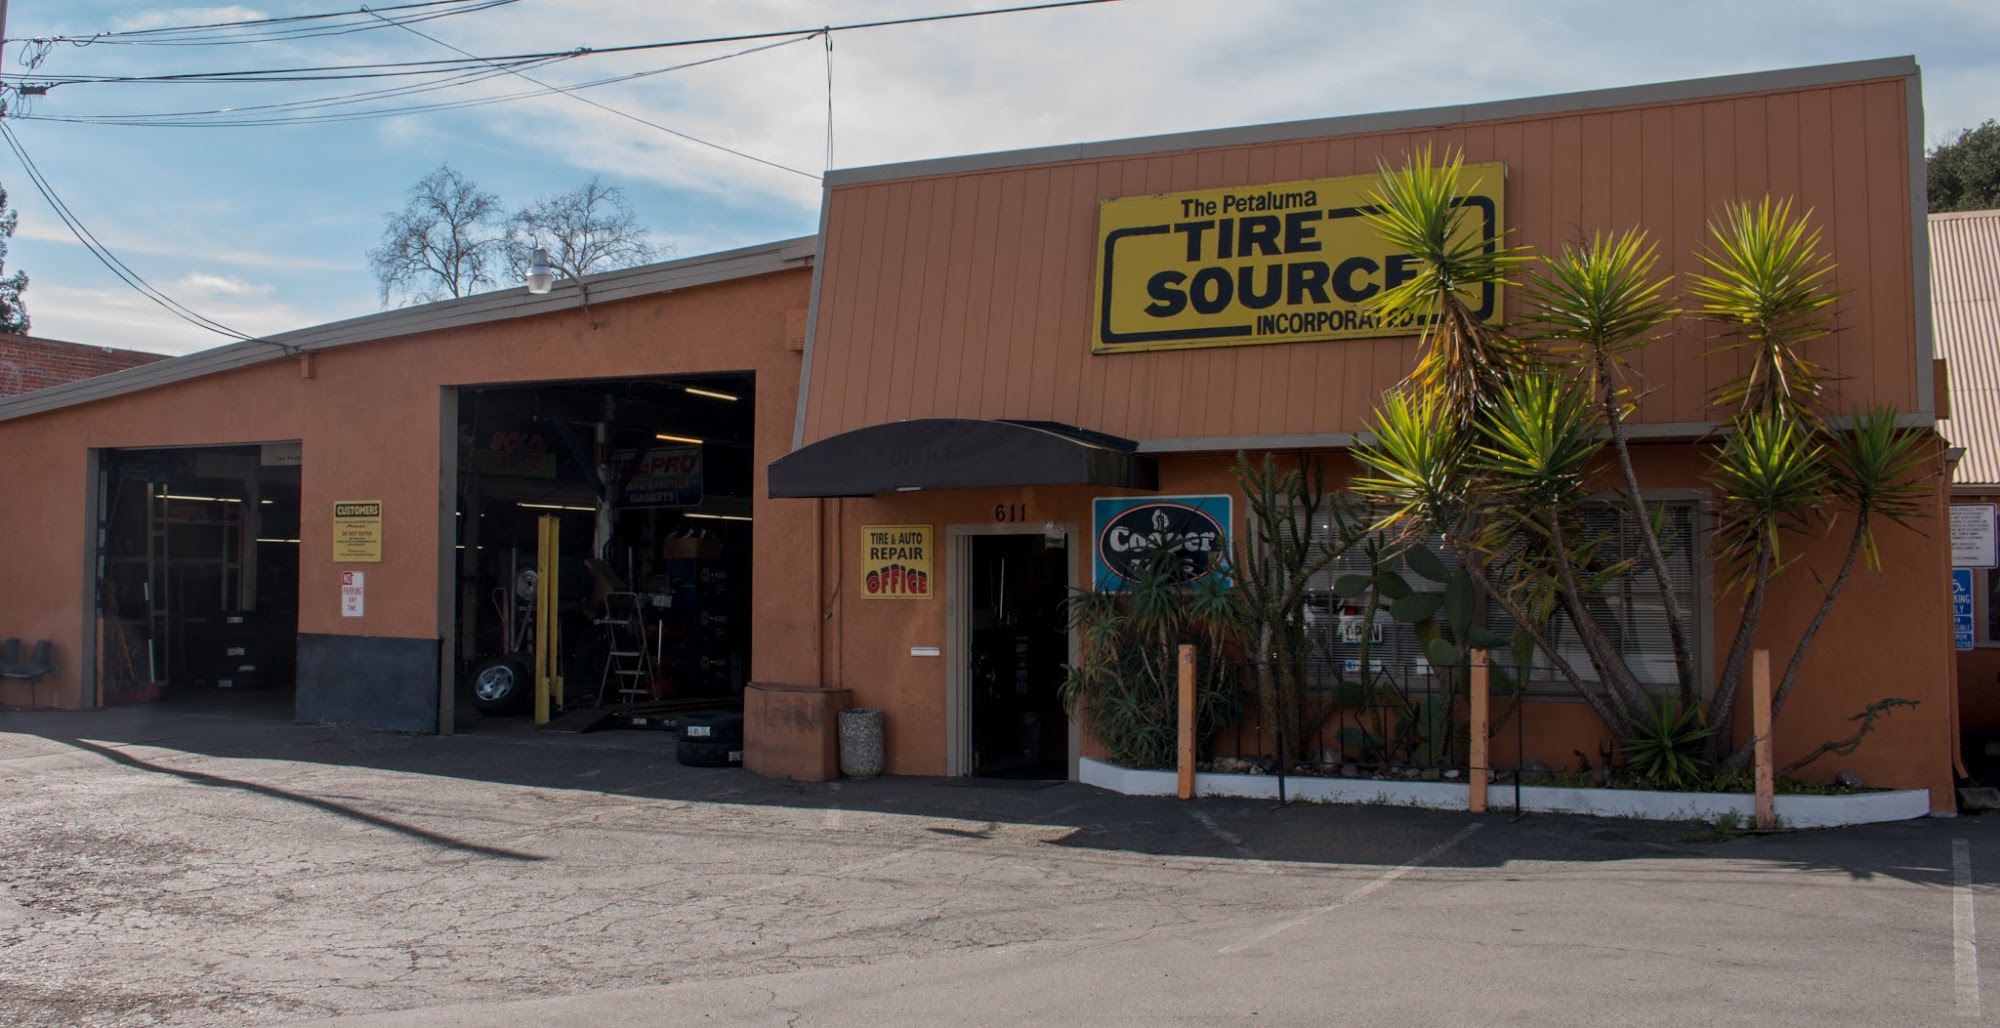 Petaluma Tire Source Inc